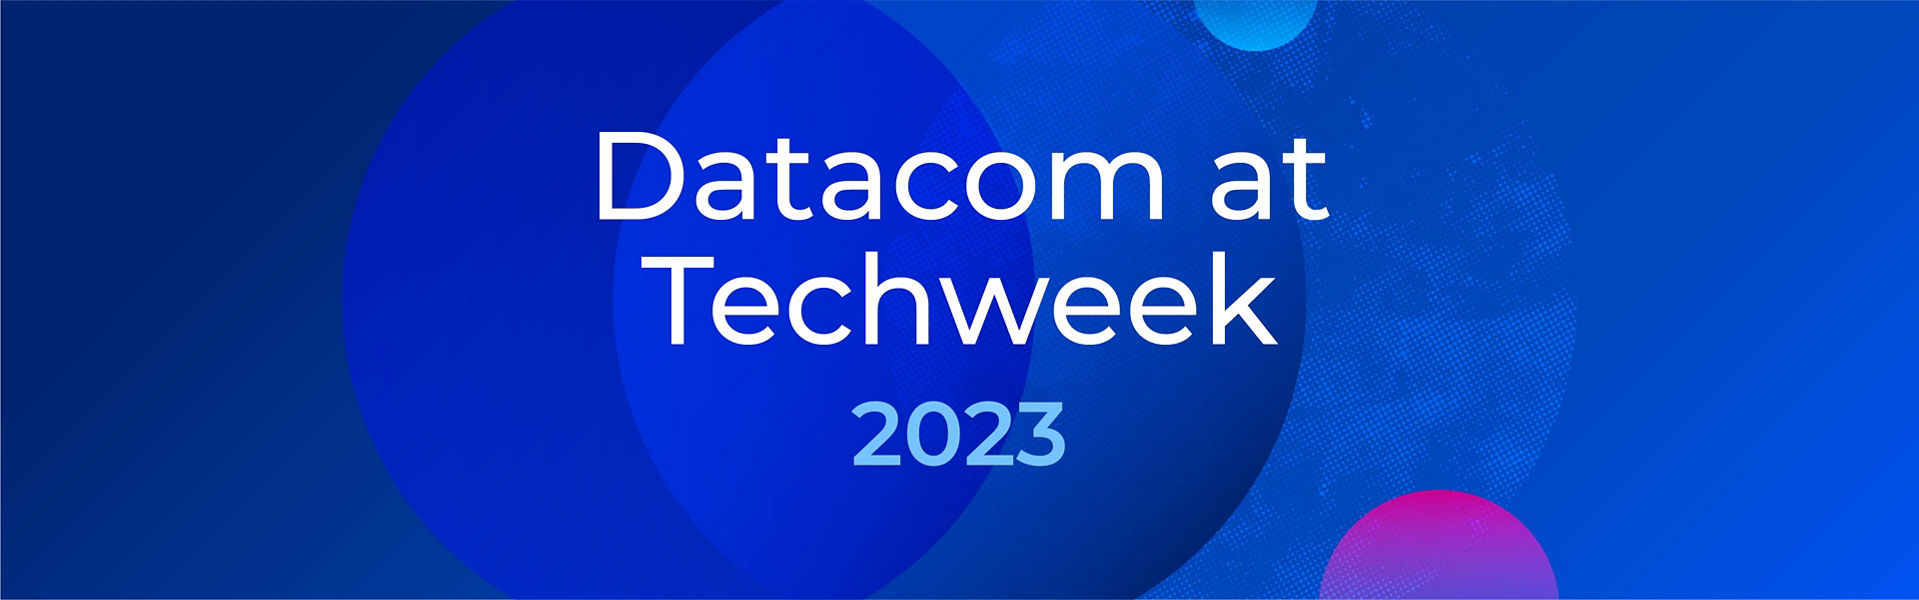 Datacom at Techweek 2023 banner